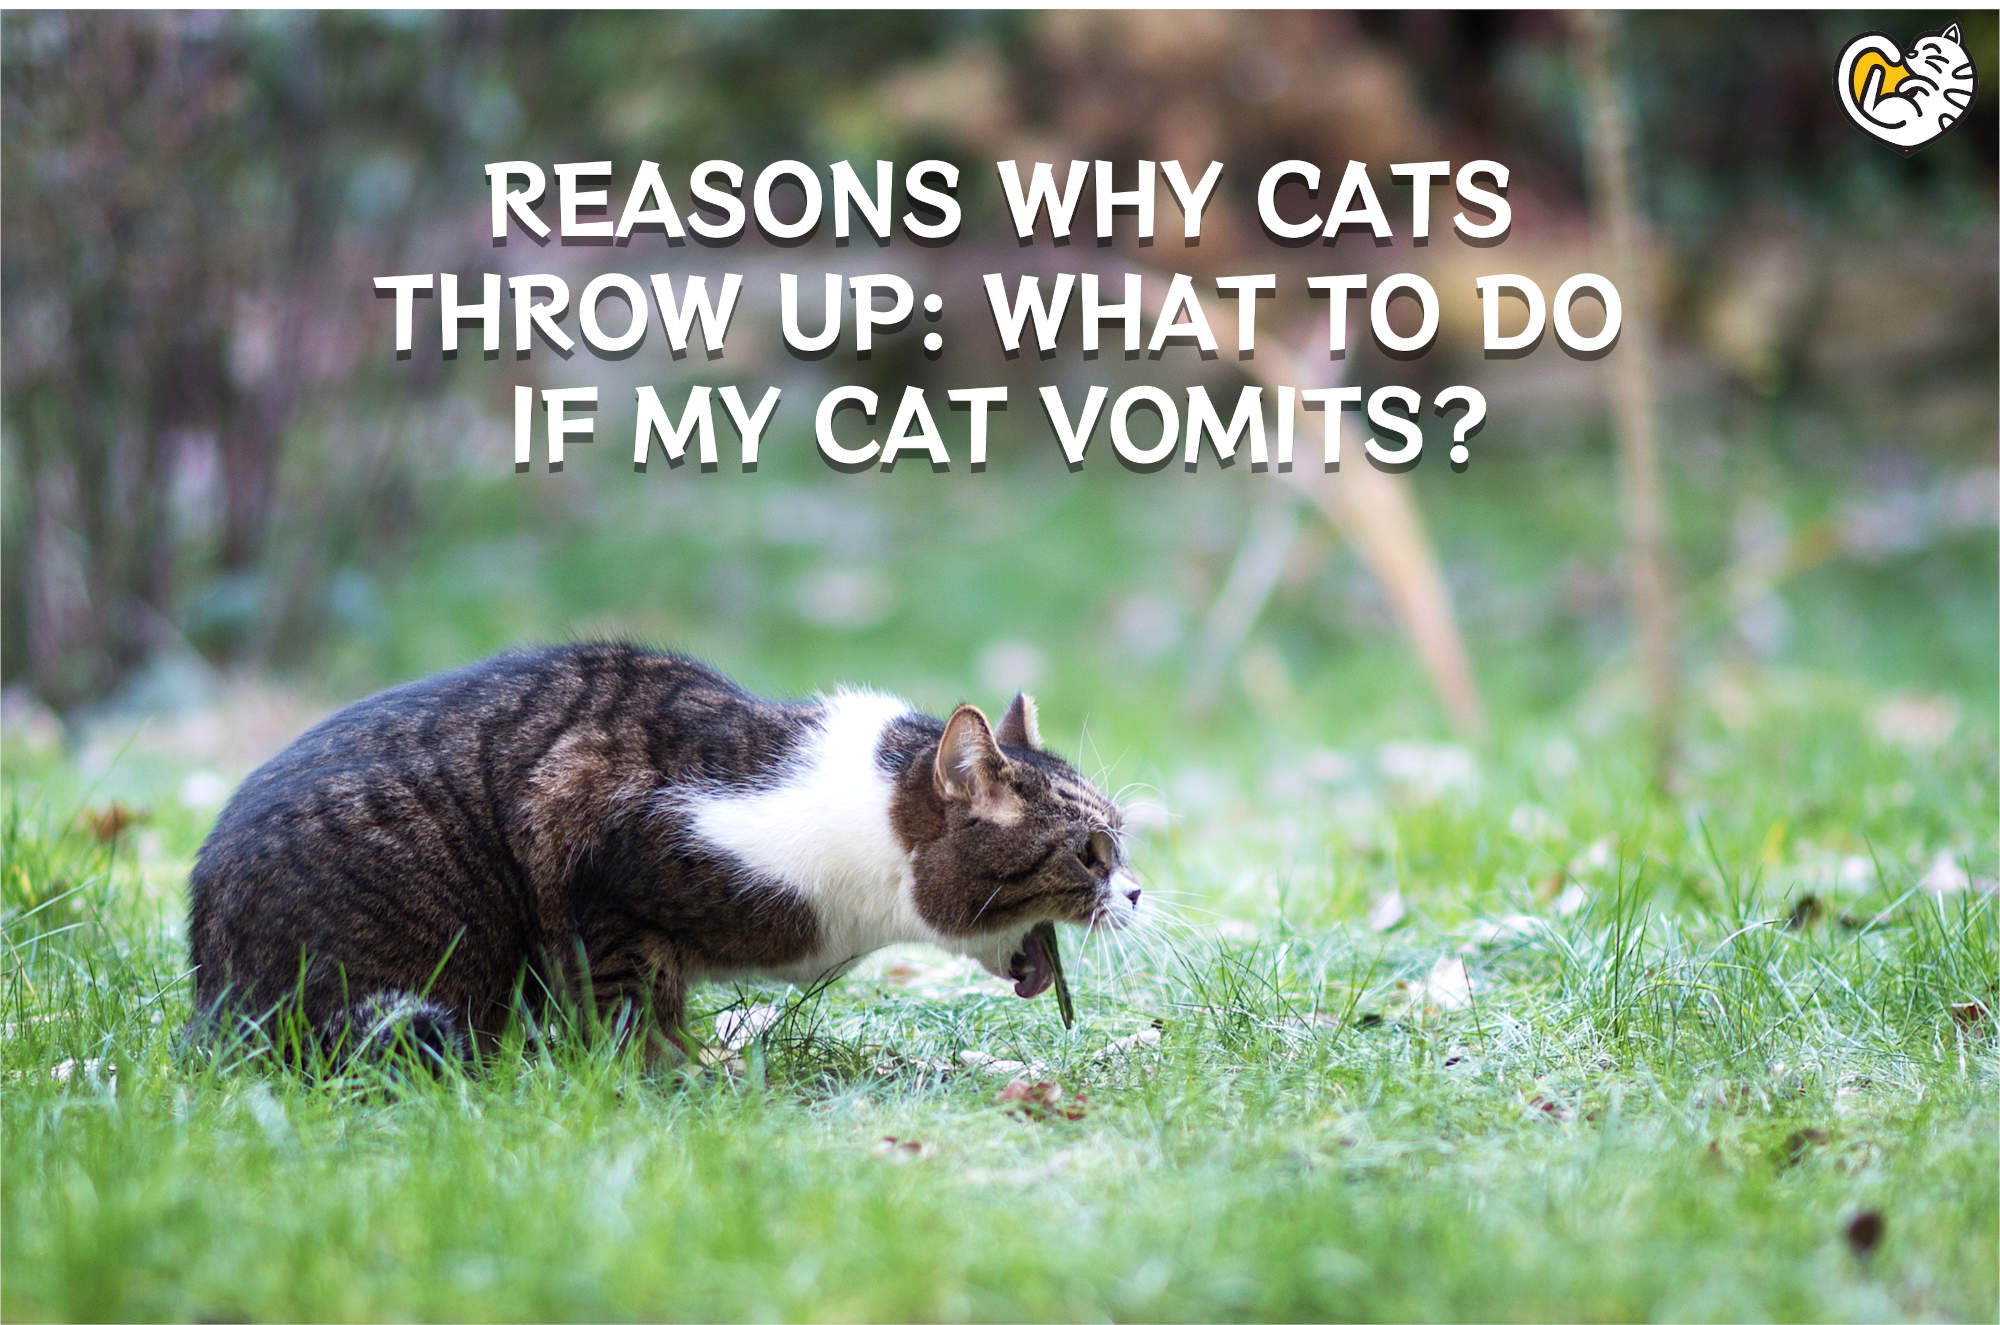 Kenapa Kucing Muntah: Apa Yang Perlu Dilakukan Jika Kucing Saya Muntah?